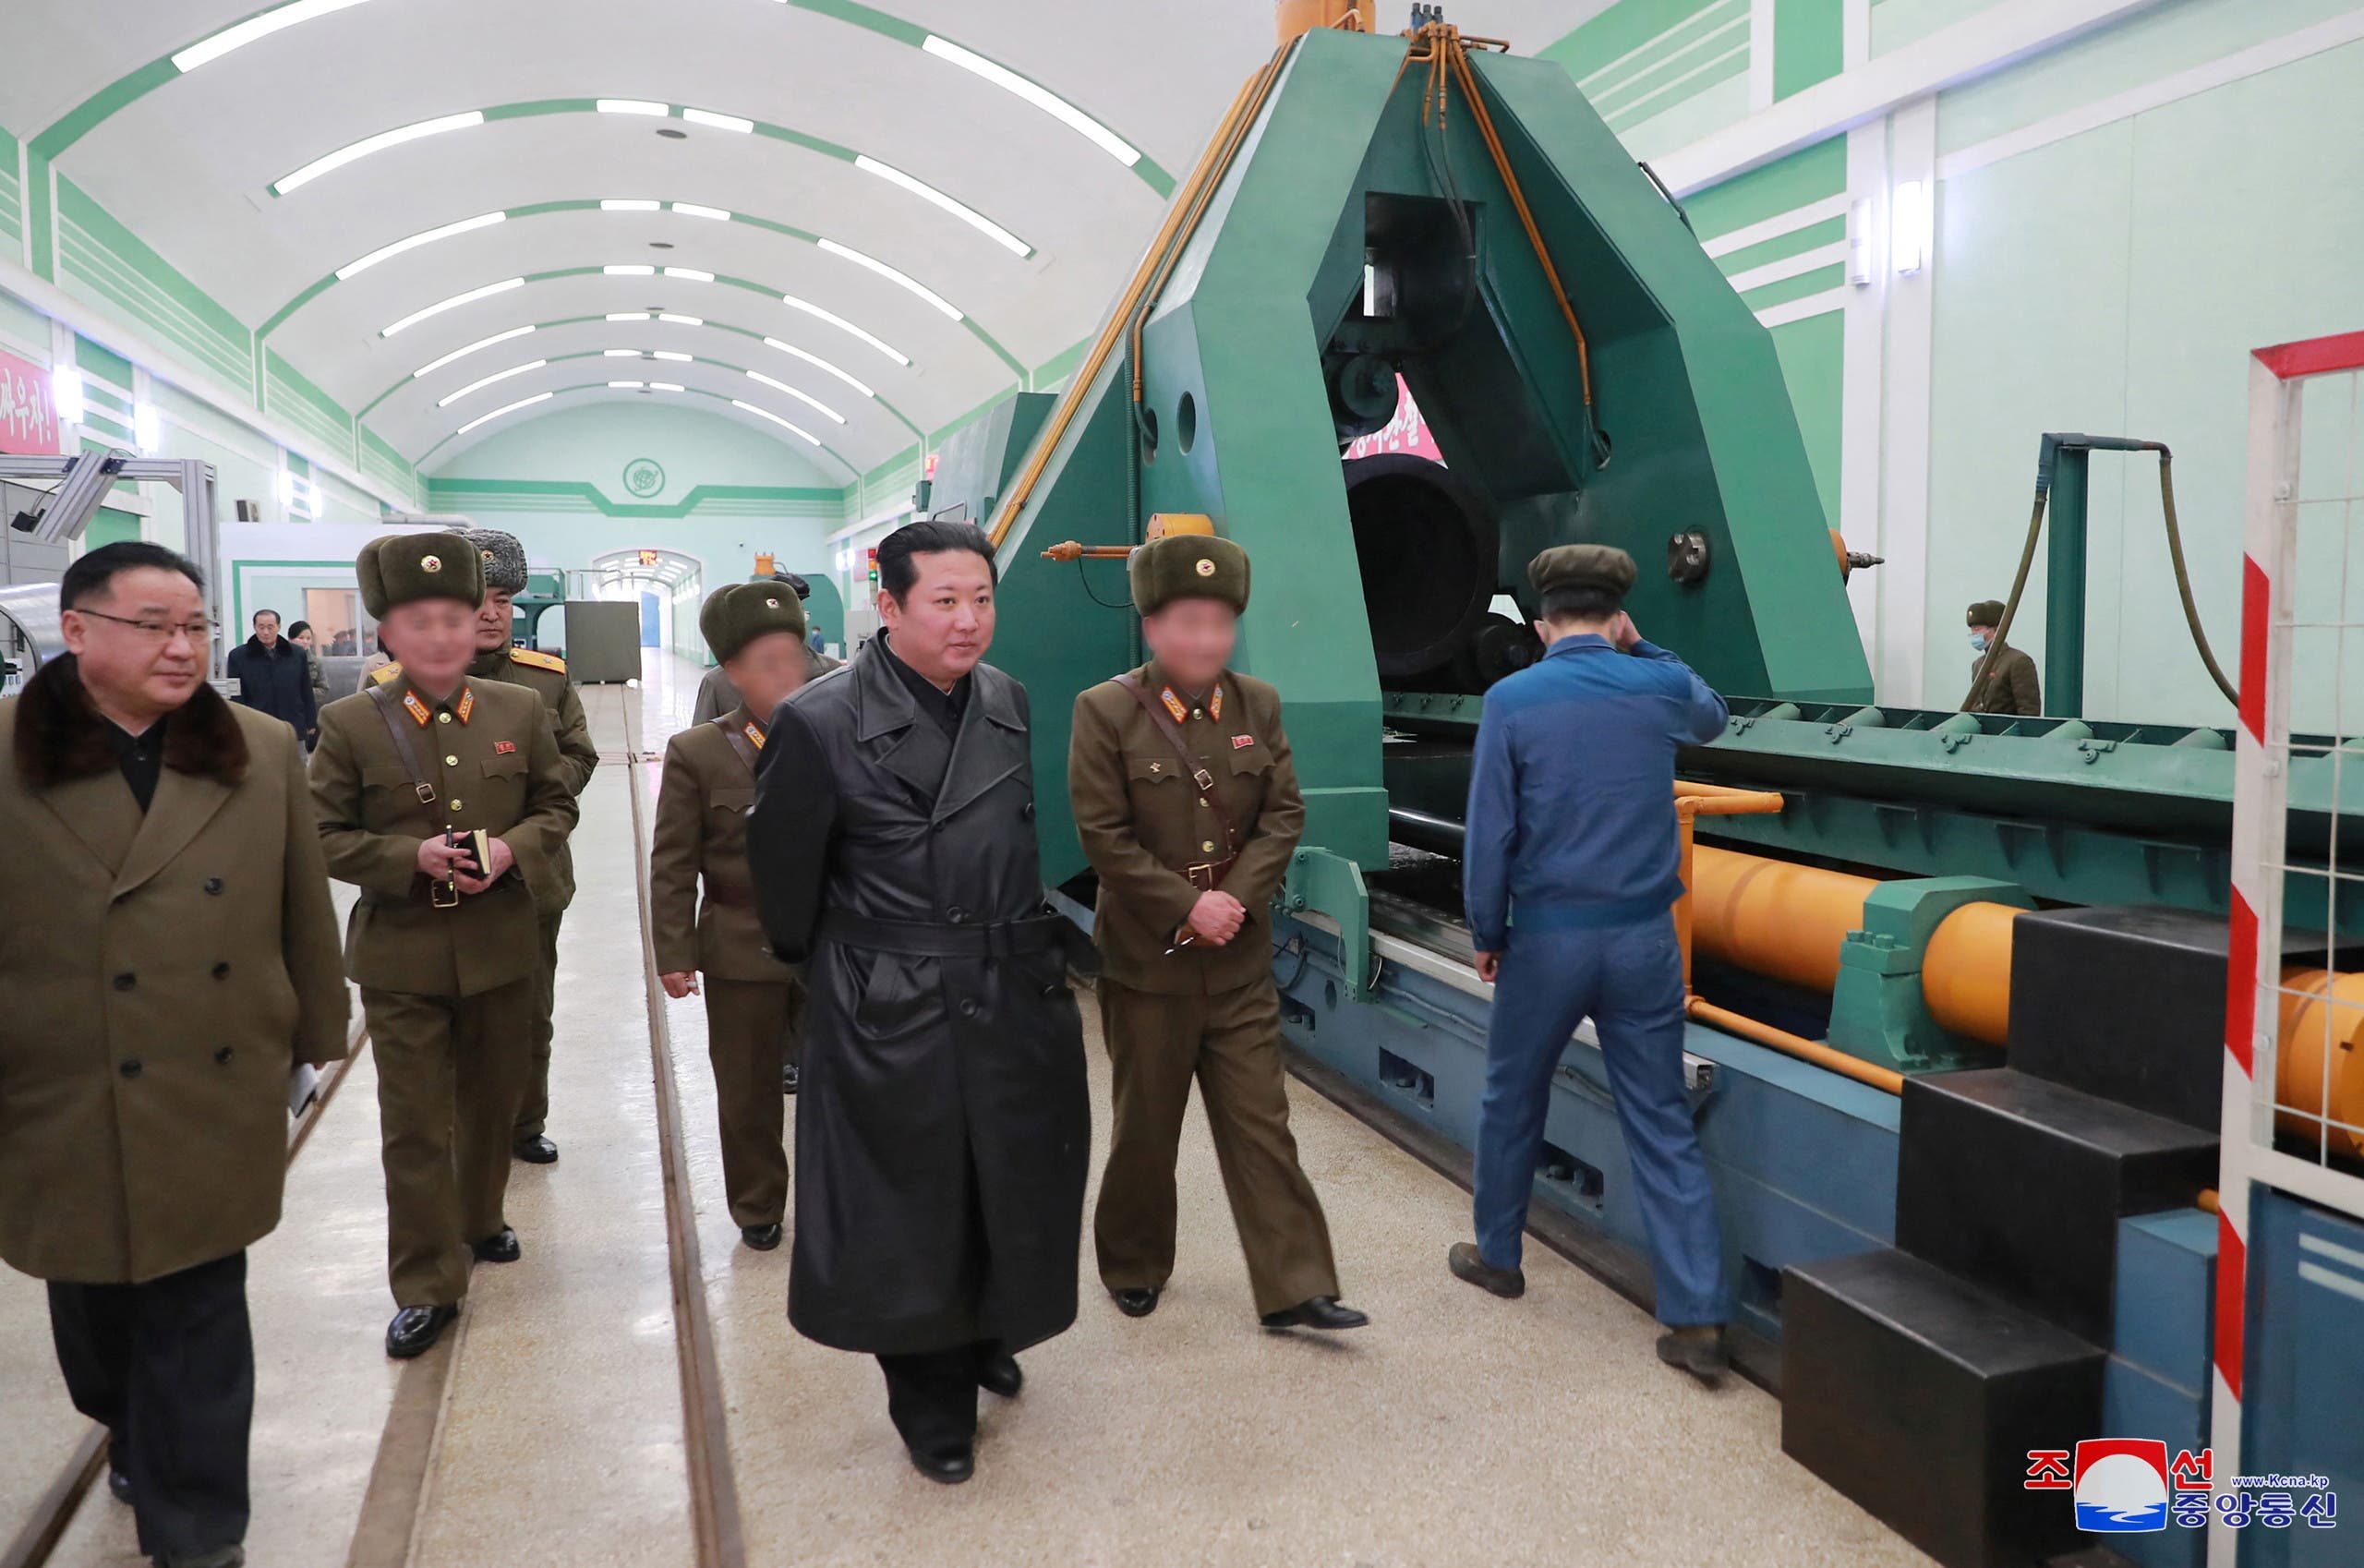 زعيم كوريا الشمالية كيم جونغ اون يزور معمل أسلحة في يناير الماضي